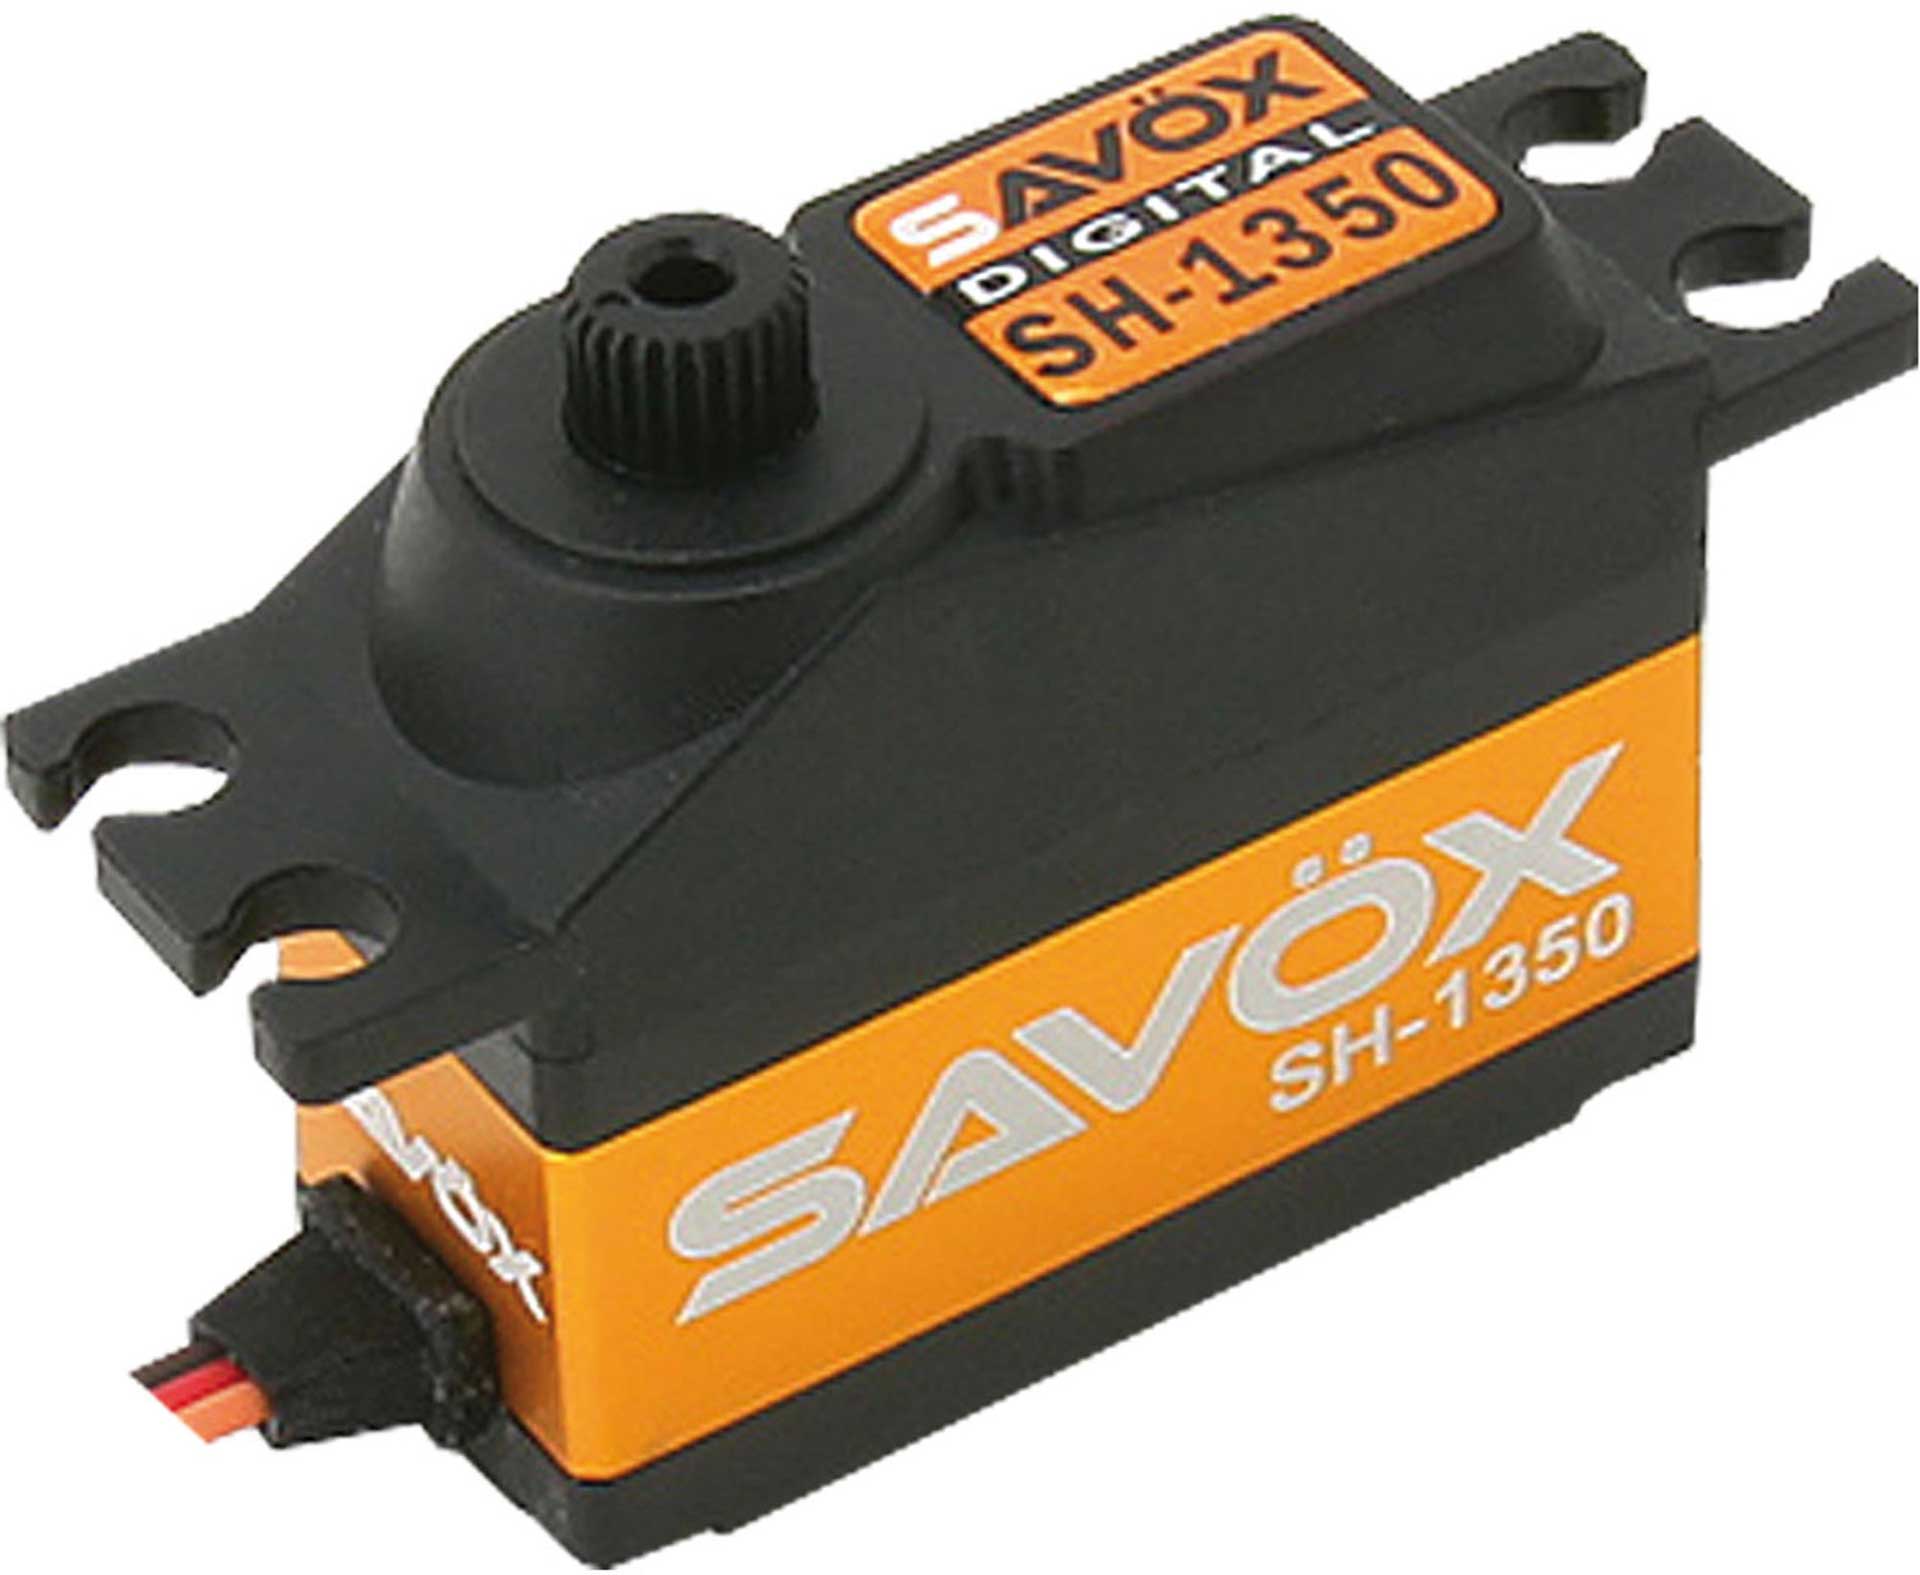 SAVÖX SH-1350 (6V/4,6KG/0,11s) DIGITAL SERVO